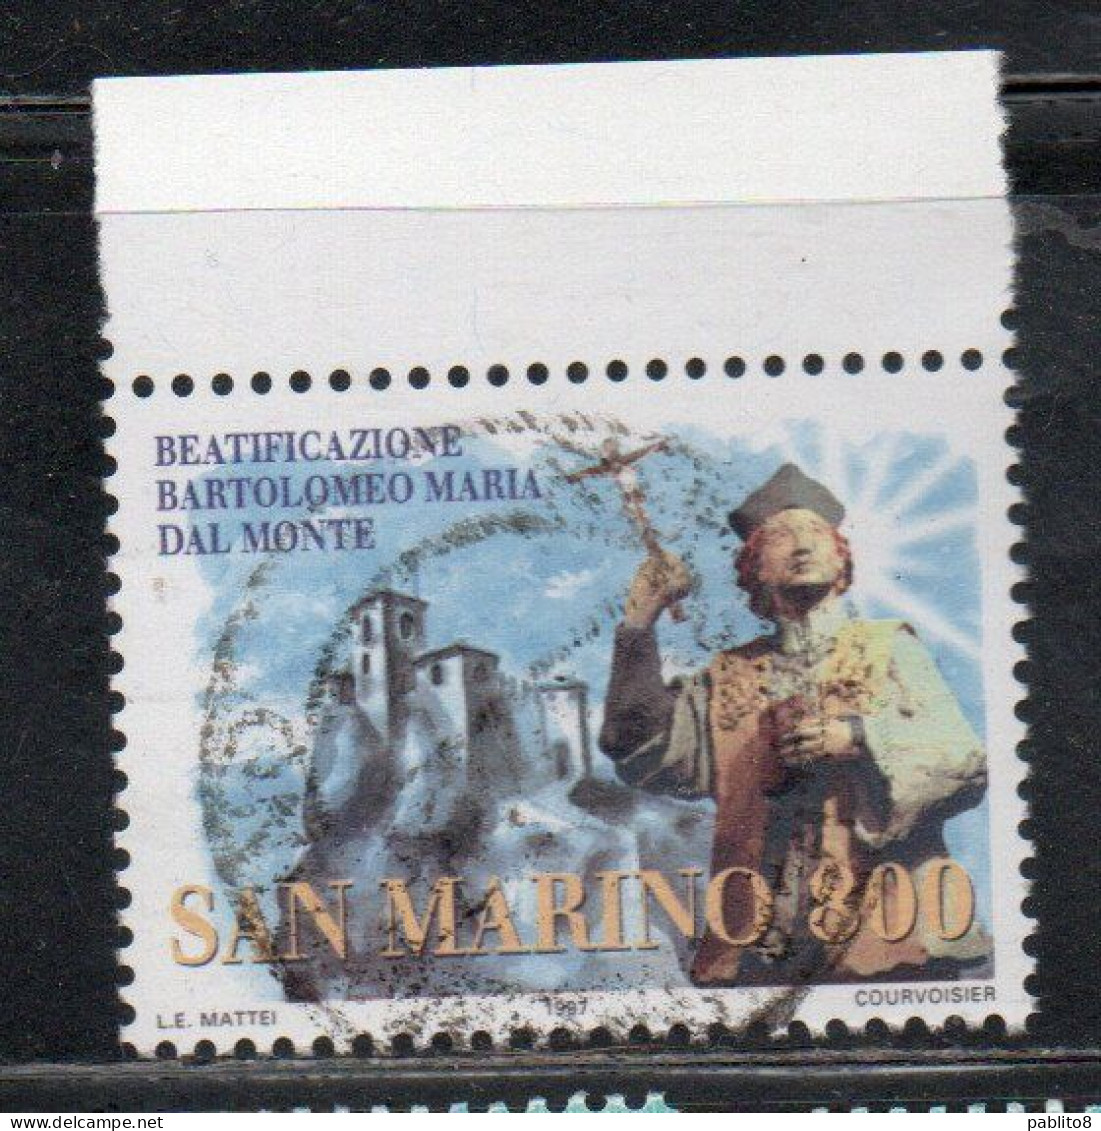 REPUBBLICA SAN MARINO 1997 BETIFICAZIONE DI BARTOLOMEO MARIA DAL MONTE BEATIFICATION LIRE 800 USATO USED OBLITERE' - Used Stamps